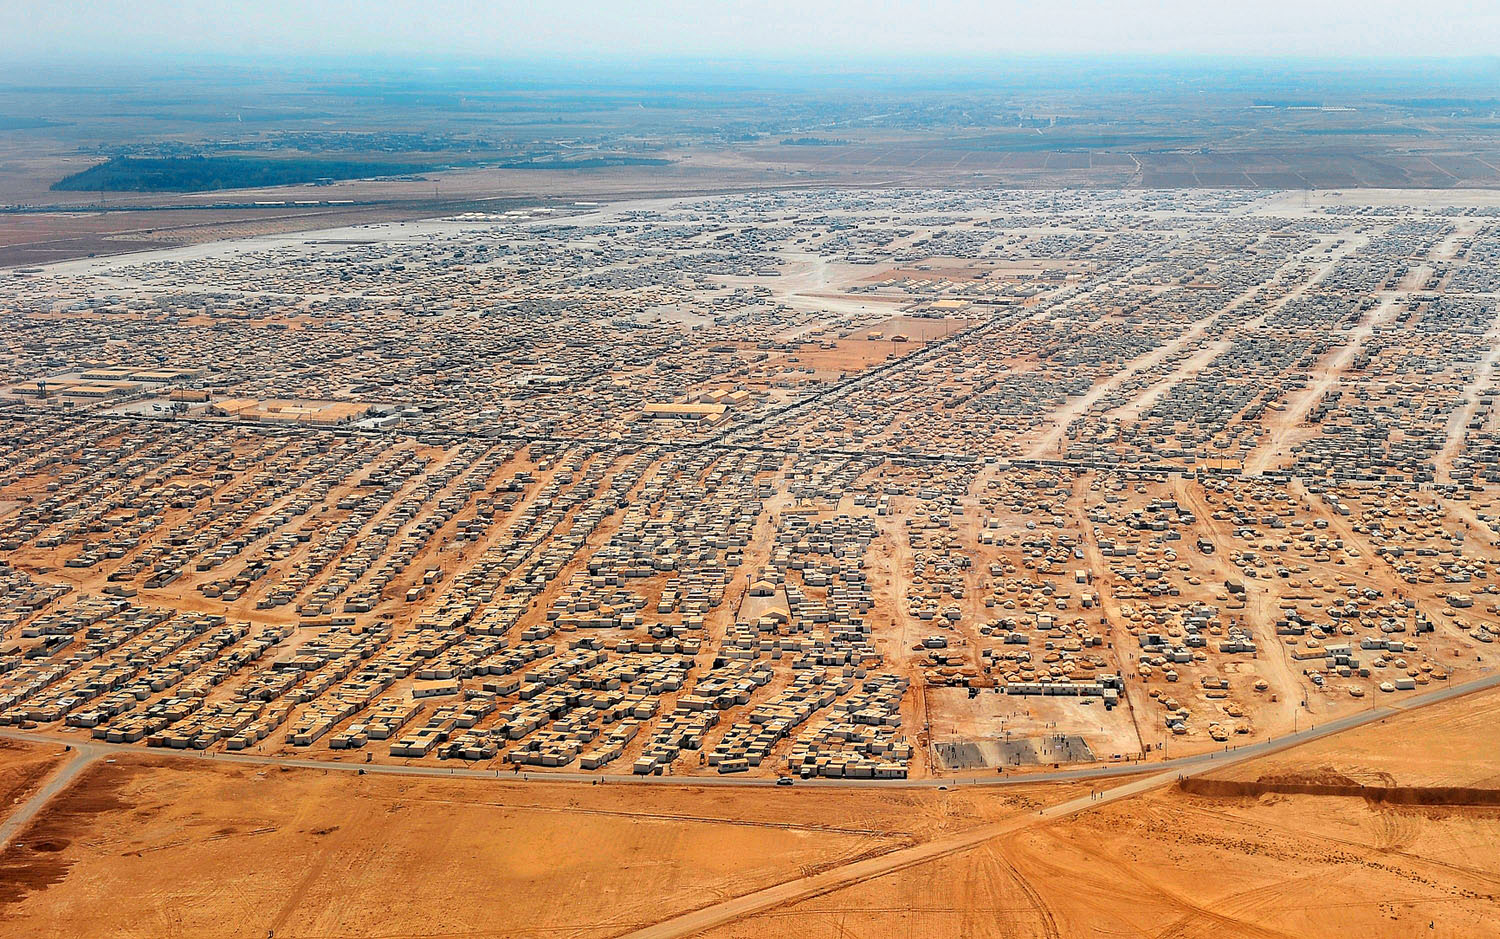 Menekülttábor Jordániában. A többség szeretne hazatérni Szíriába